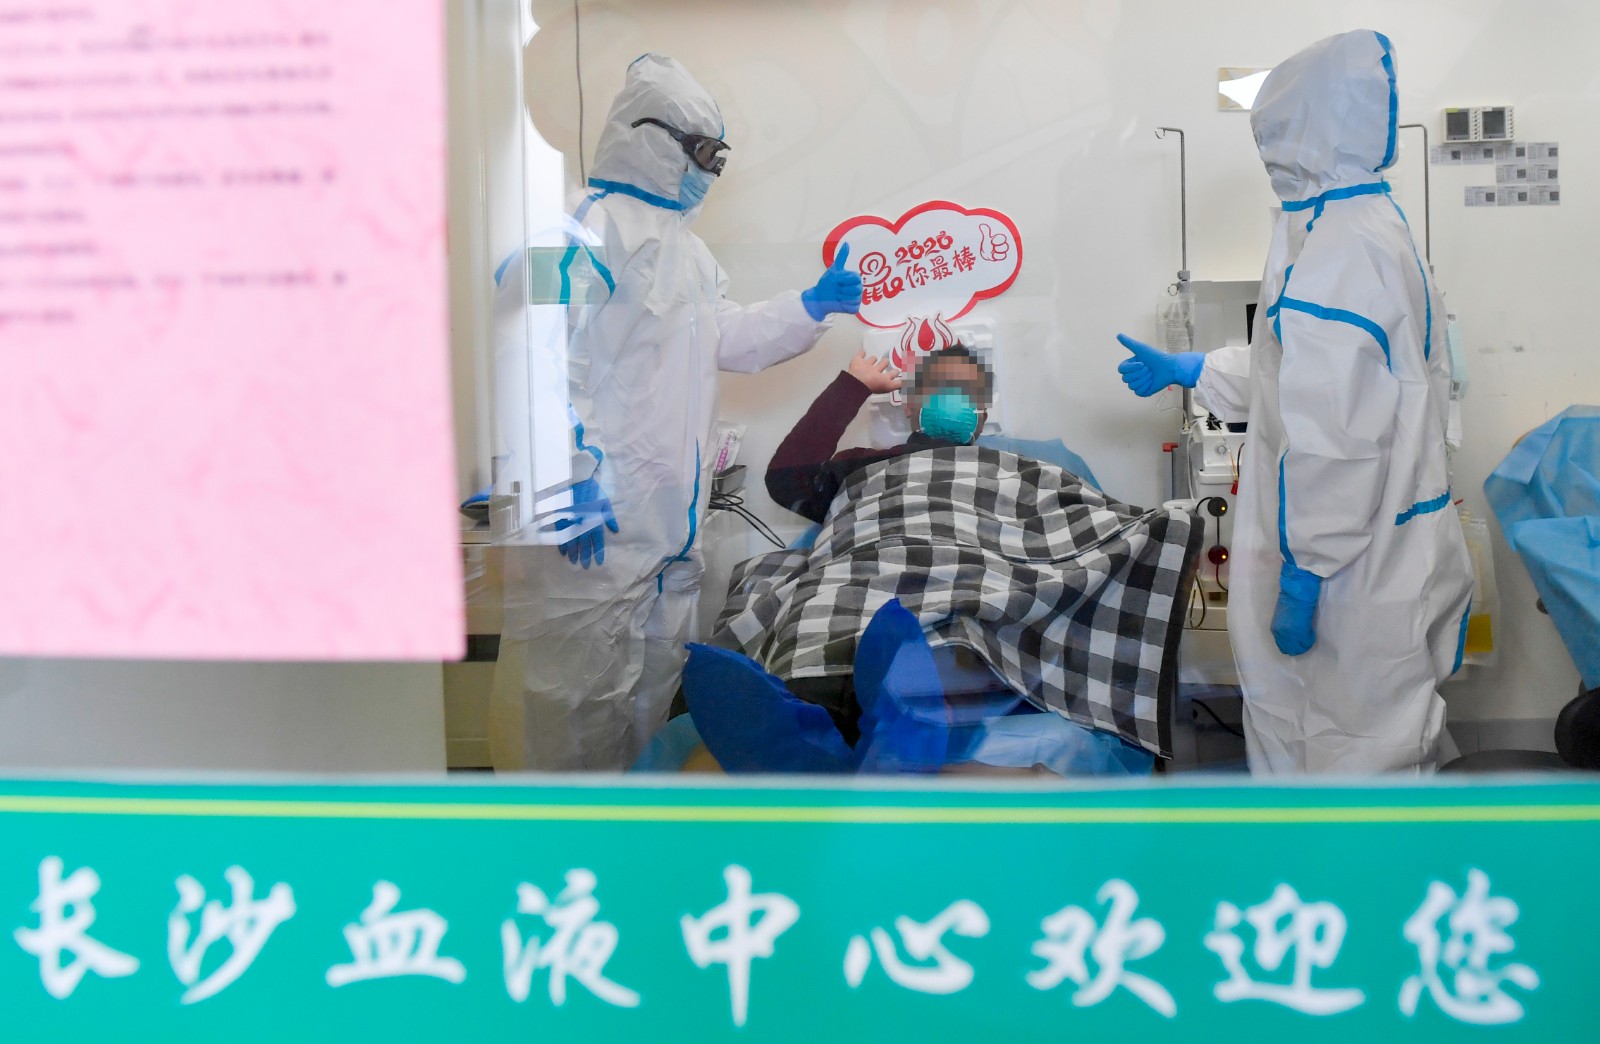 长沙血液中心人民中路献血屋内，新冠肺炎康复者郭先生正在捐献自己的血浆。长沙晚报全媒体记者 邹麟 摄